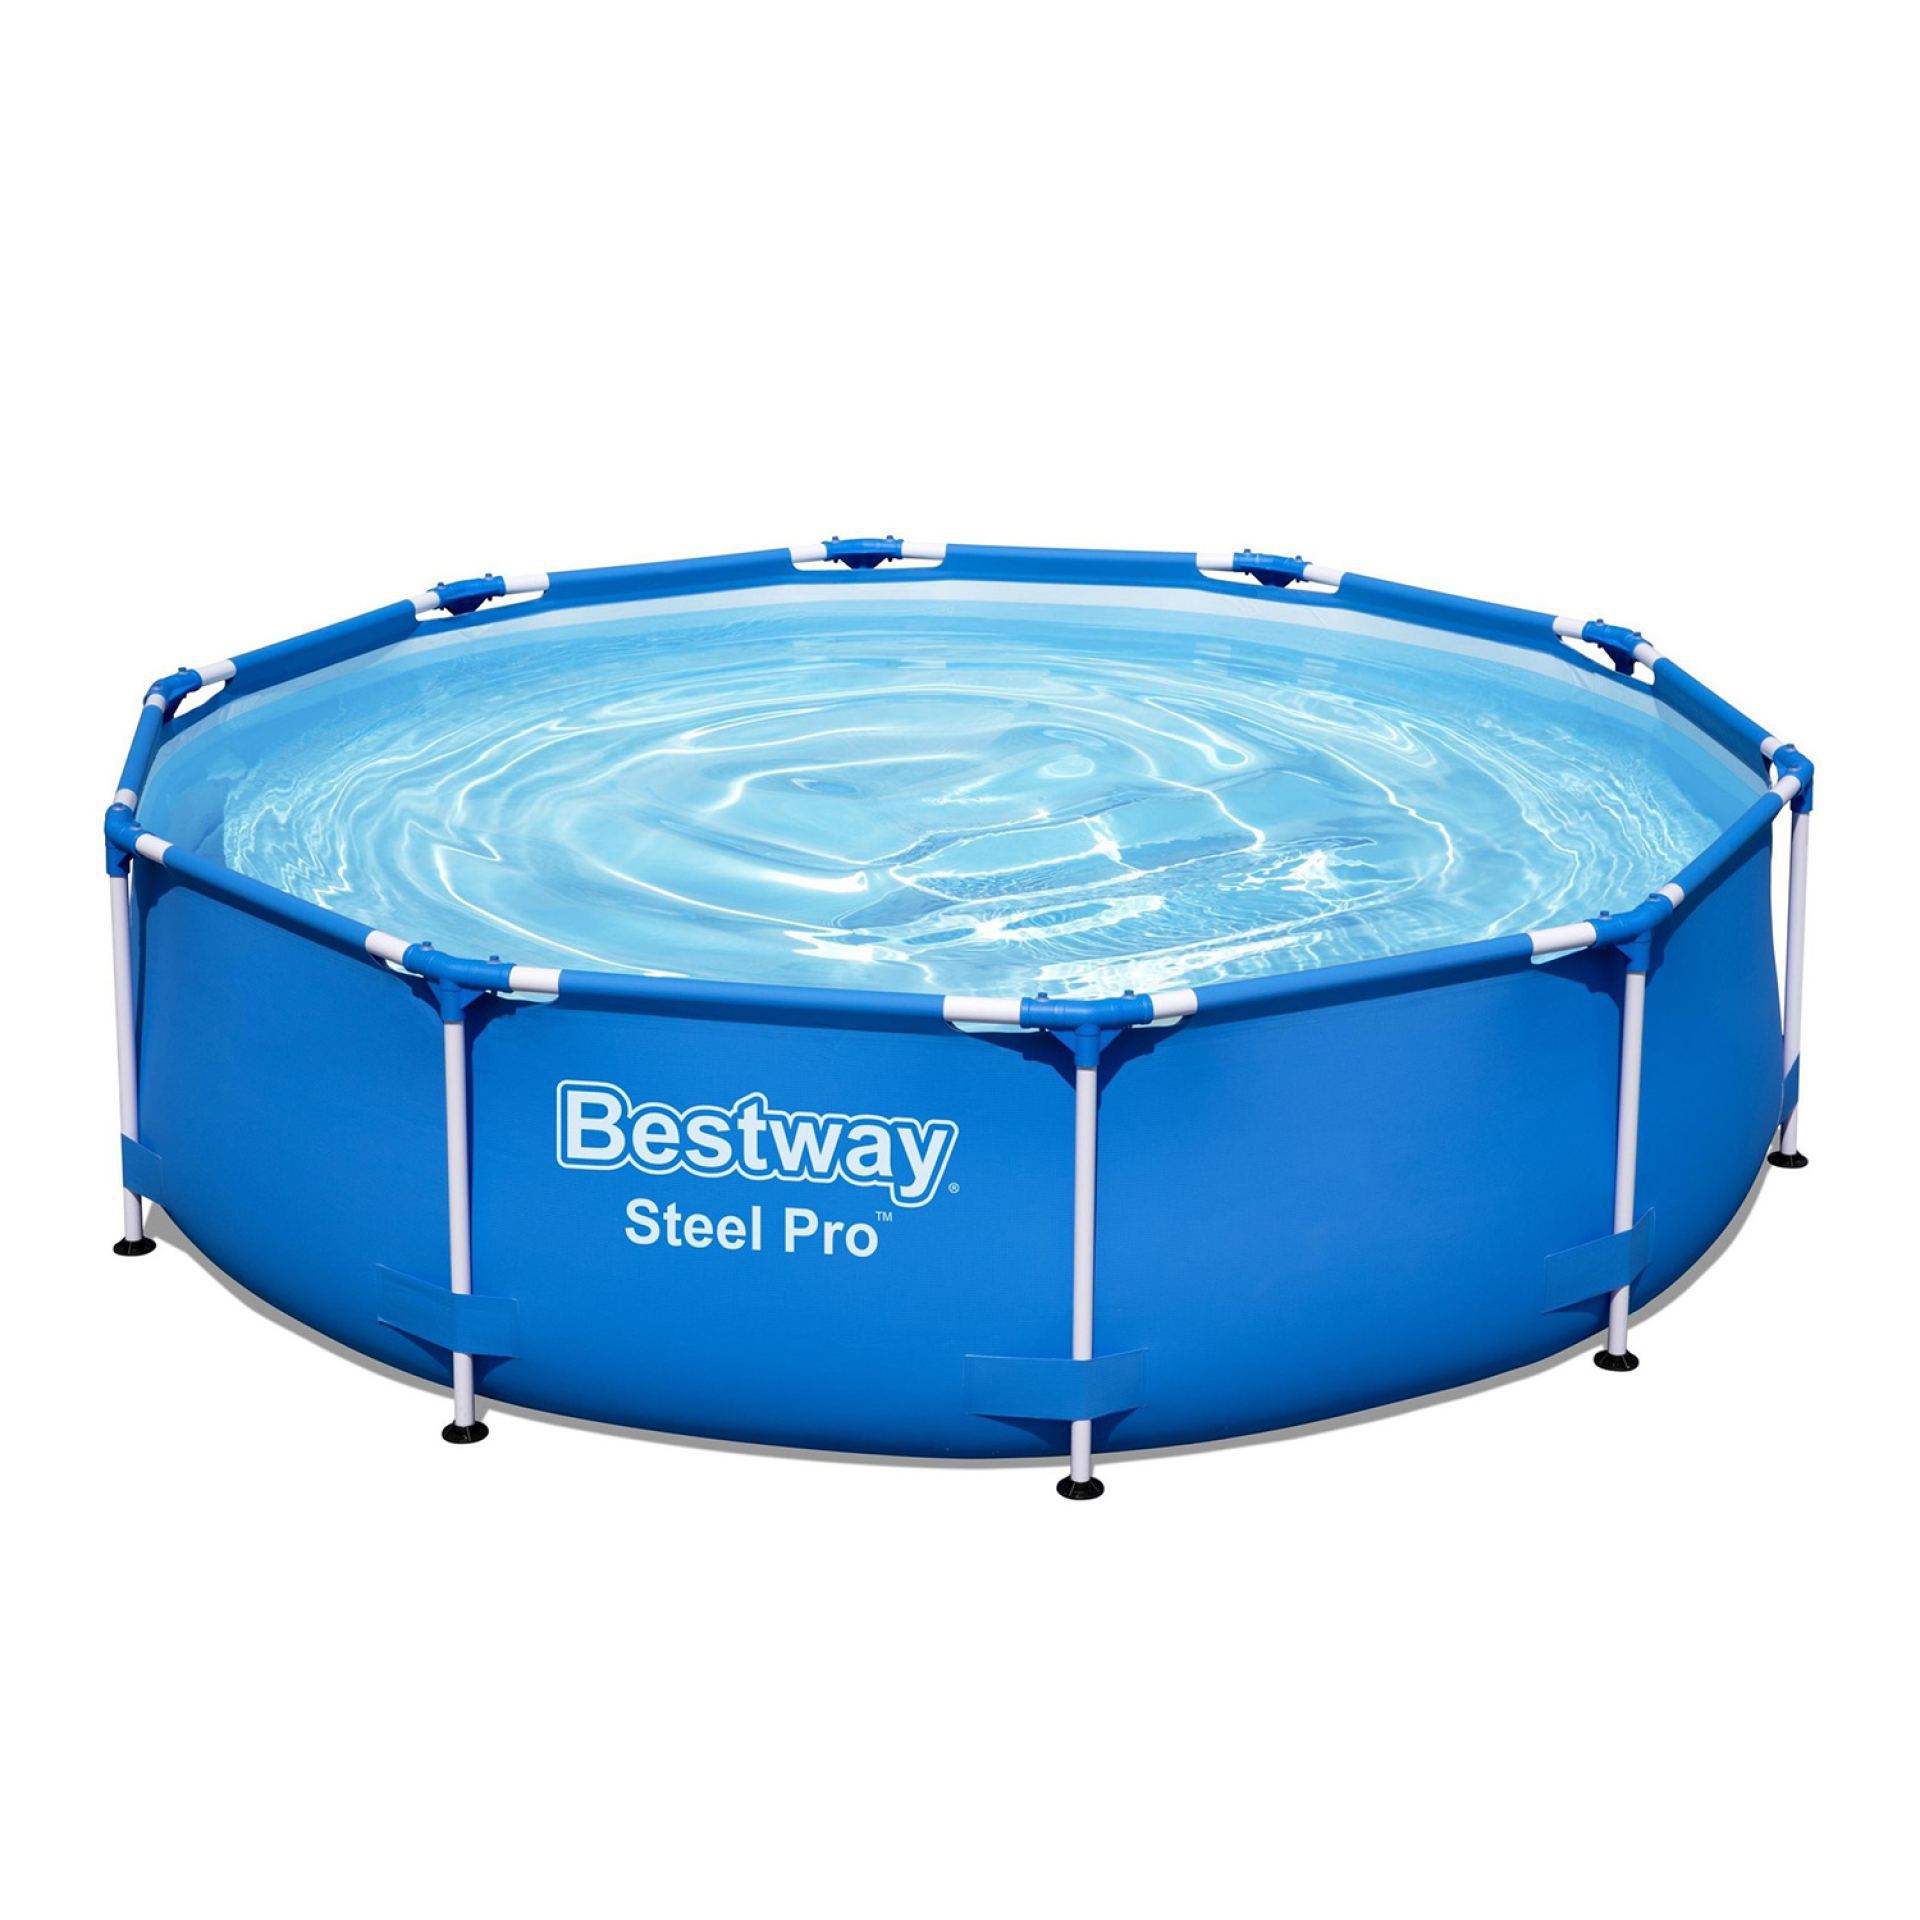 bestway zwembad steel pro 305x76cm